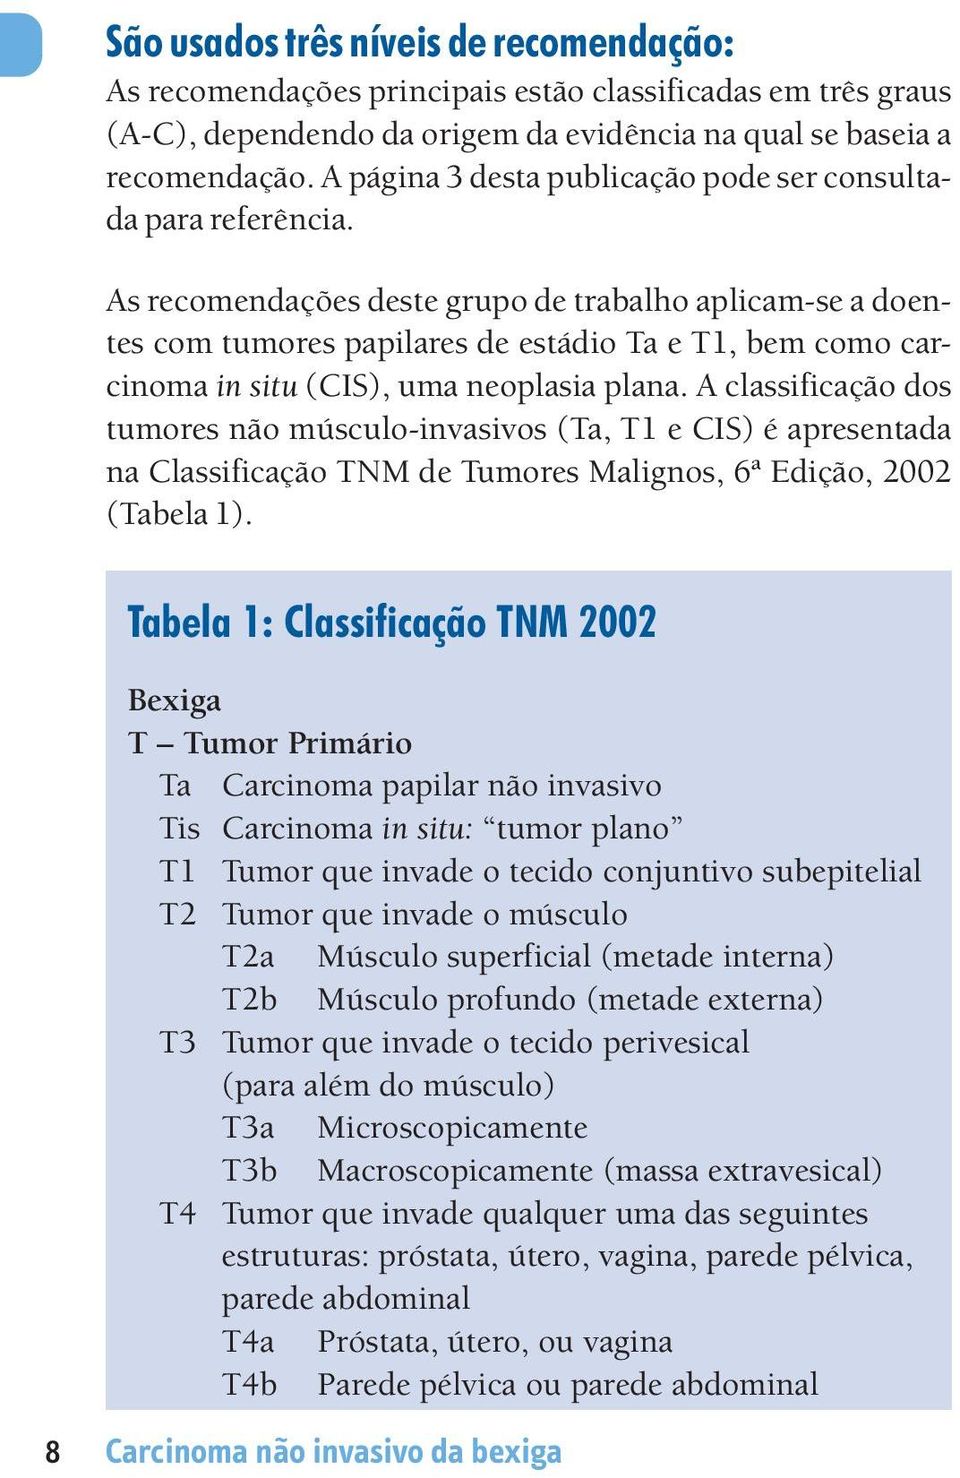 As recomendações deste grupo de trabalho aplicam-se a doentes com tumores papilares de estádio Ta e T1, bem como carcinoma in situ (CIS), uma neoplasia plana.